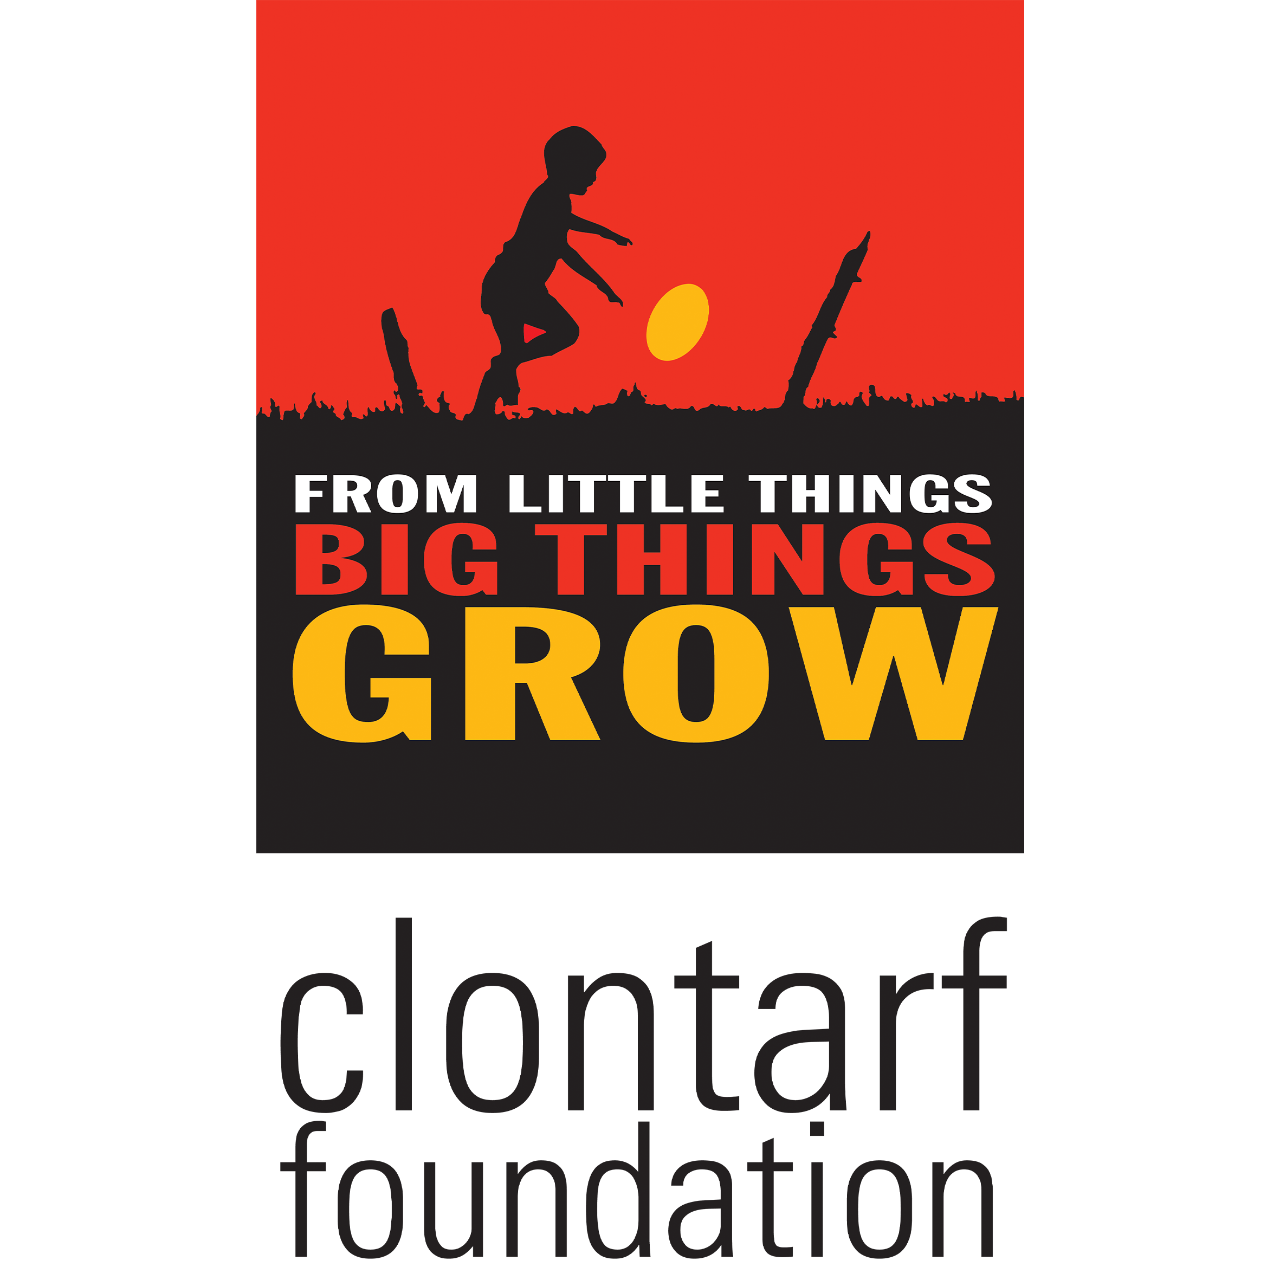 Clontarf Foundation logo